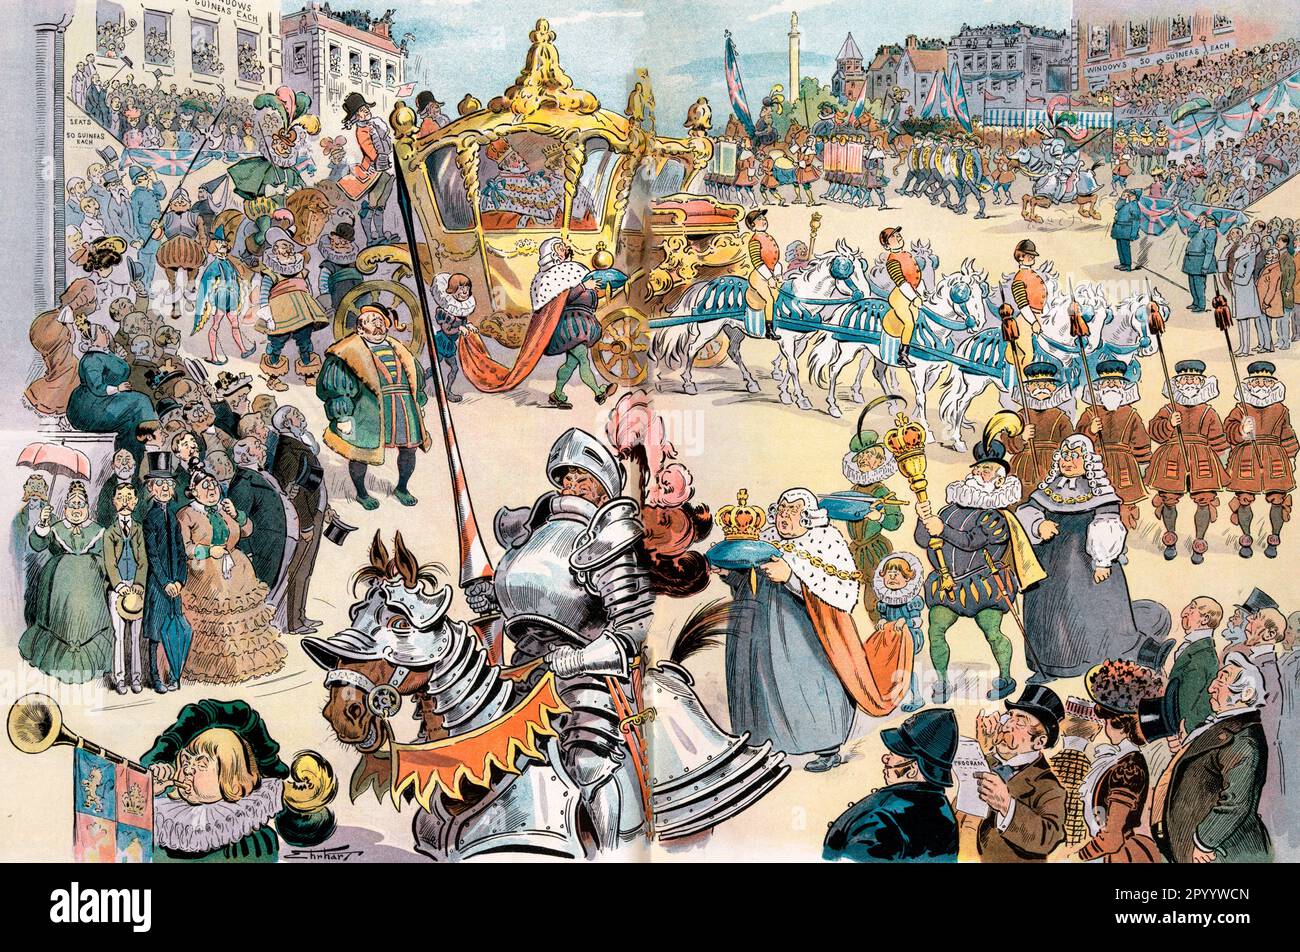 Die größte Show der Welt jetzt in London - Illustration zeigt die Prozession für die Krönung von Edward VII, König von Großbritannien; viele der Teilnehmer der Pracht tragen mittelalterliche Kostüme, 1902 Stockfoto